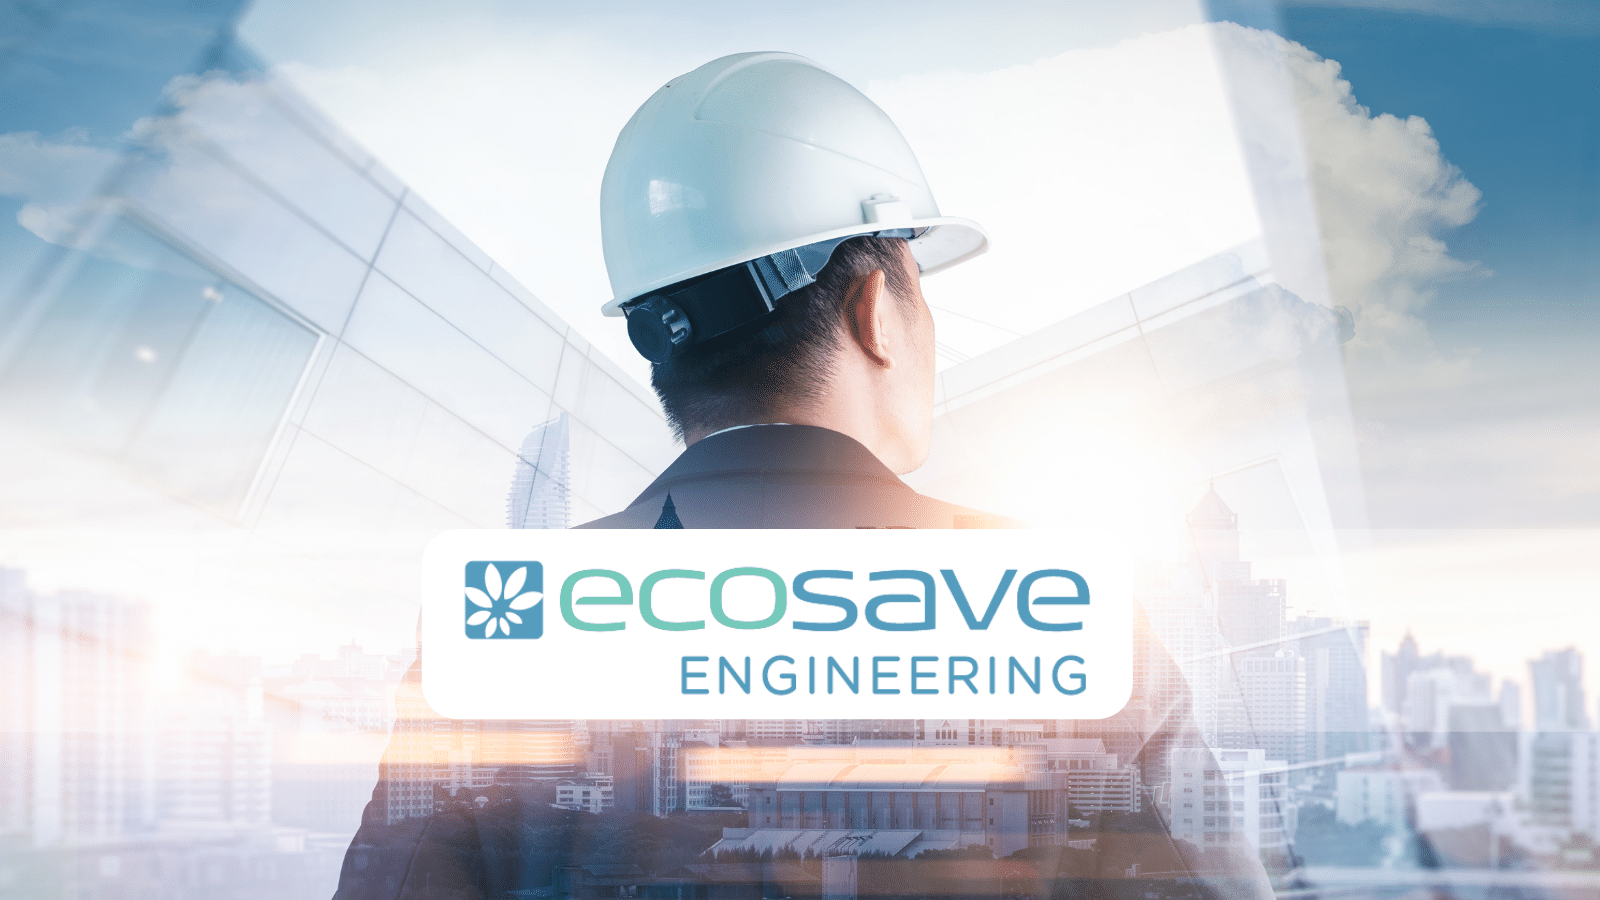 Ecosave Engineering